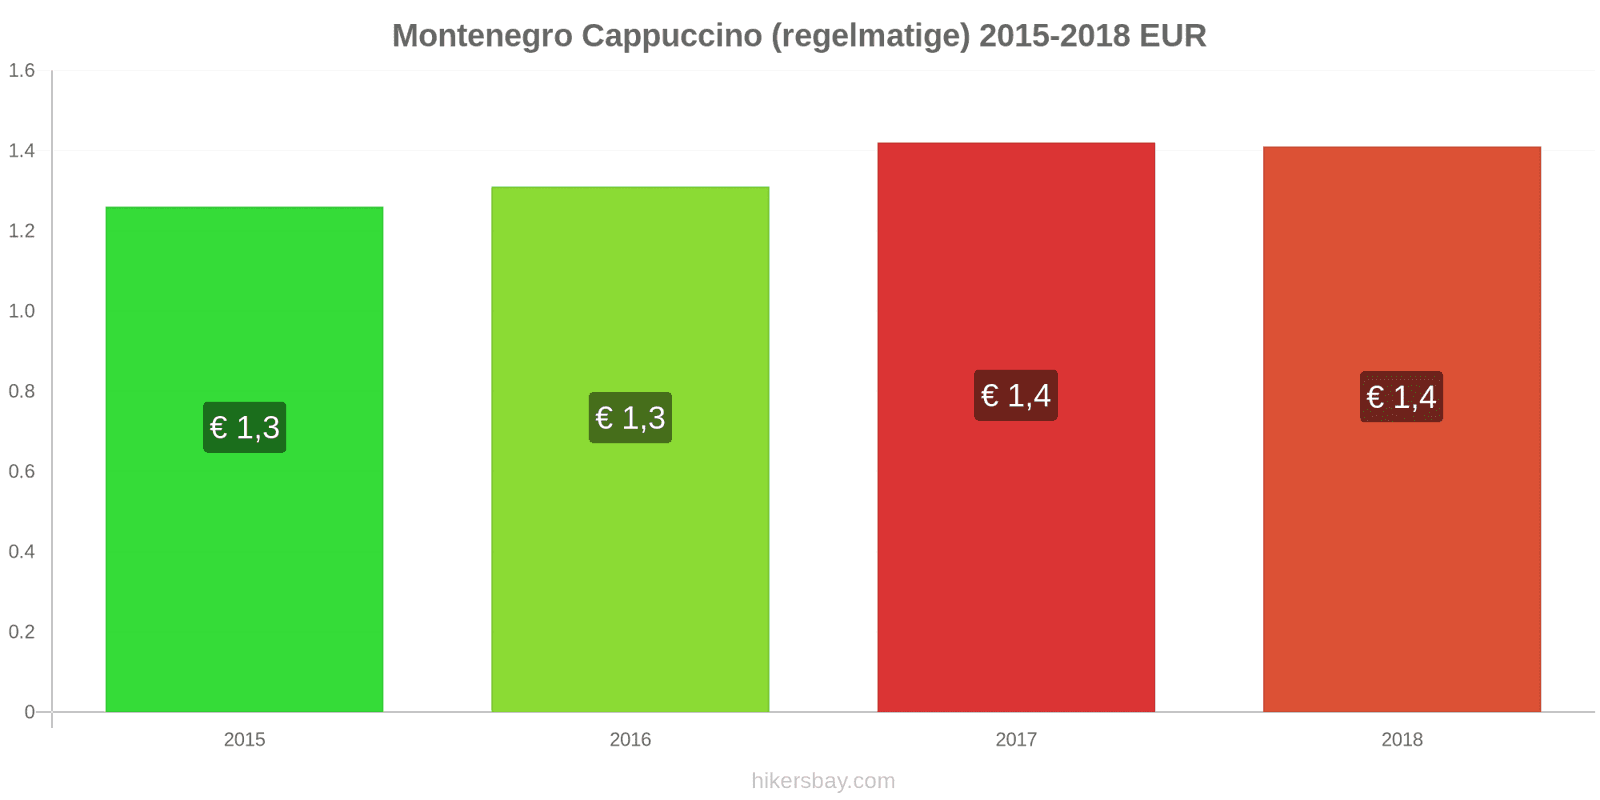 Montenegro prijswijzigingen Cappuccino hikersbay.com